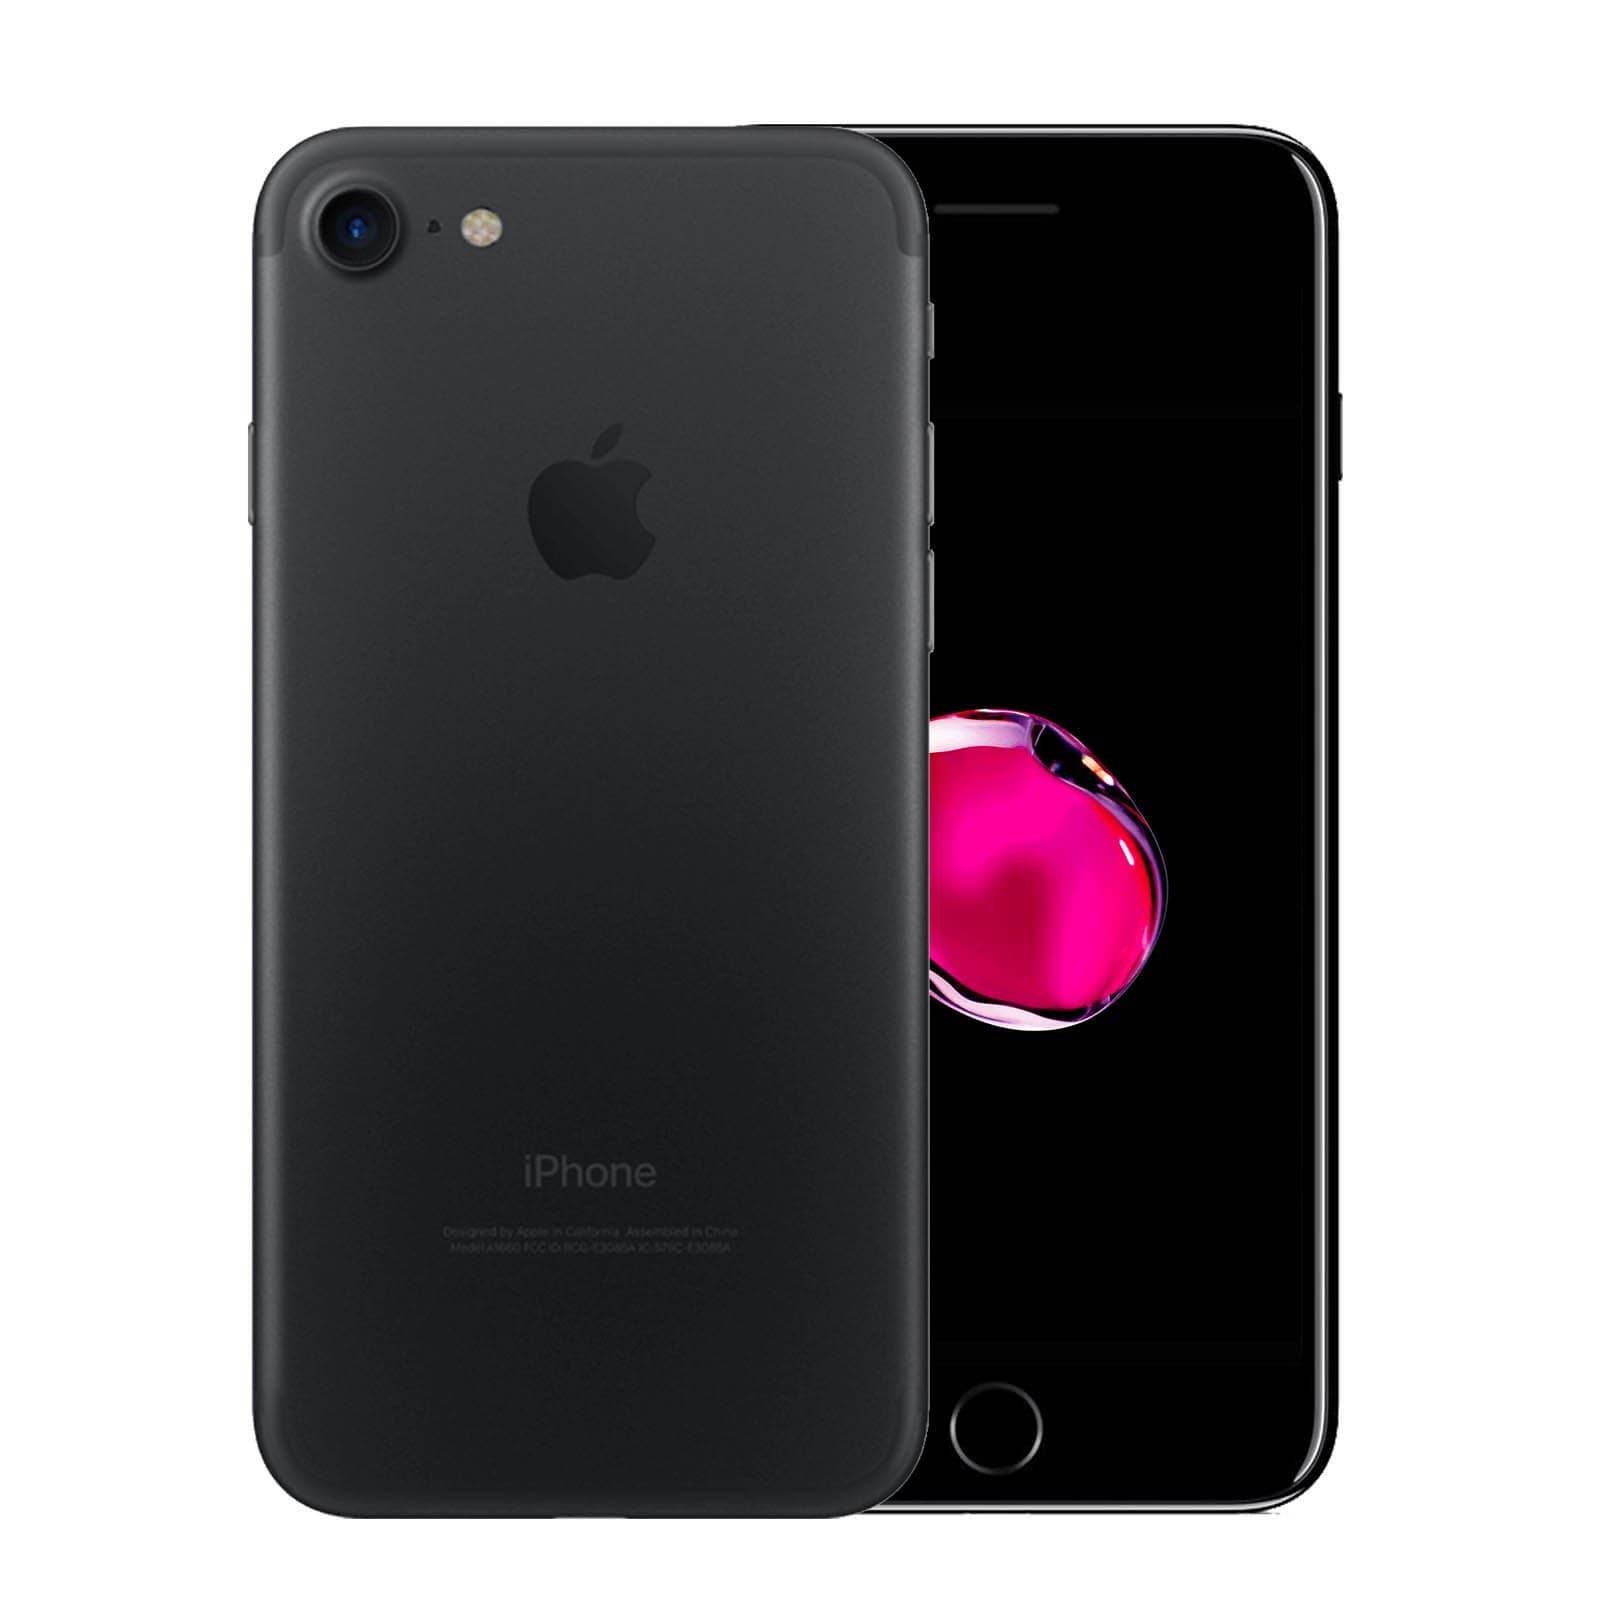 Apple iPhone 7 32GB Black Good - Unlocked 32GB Black Good